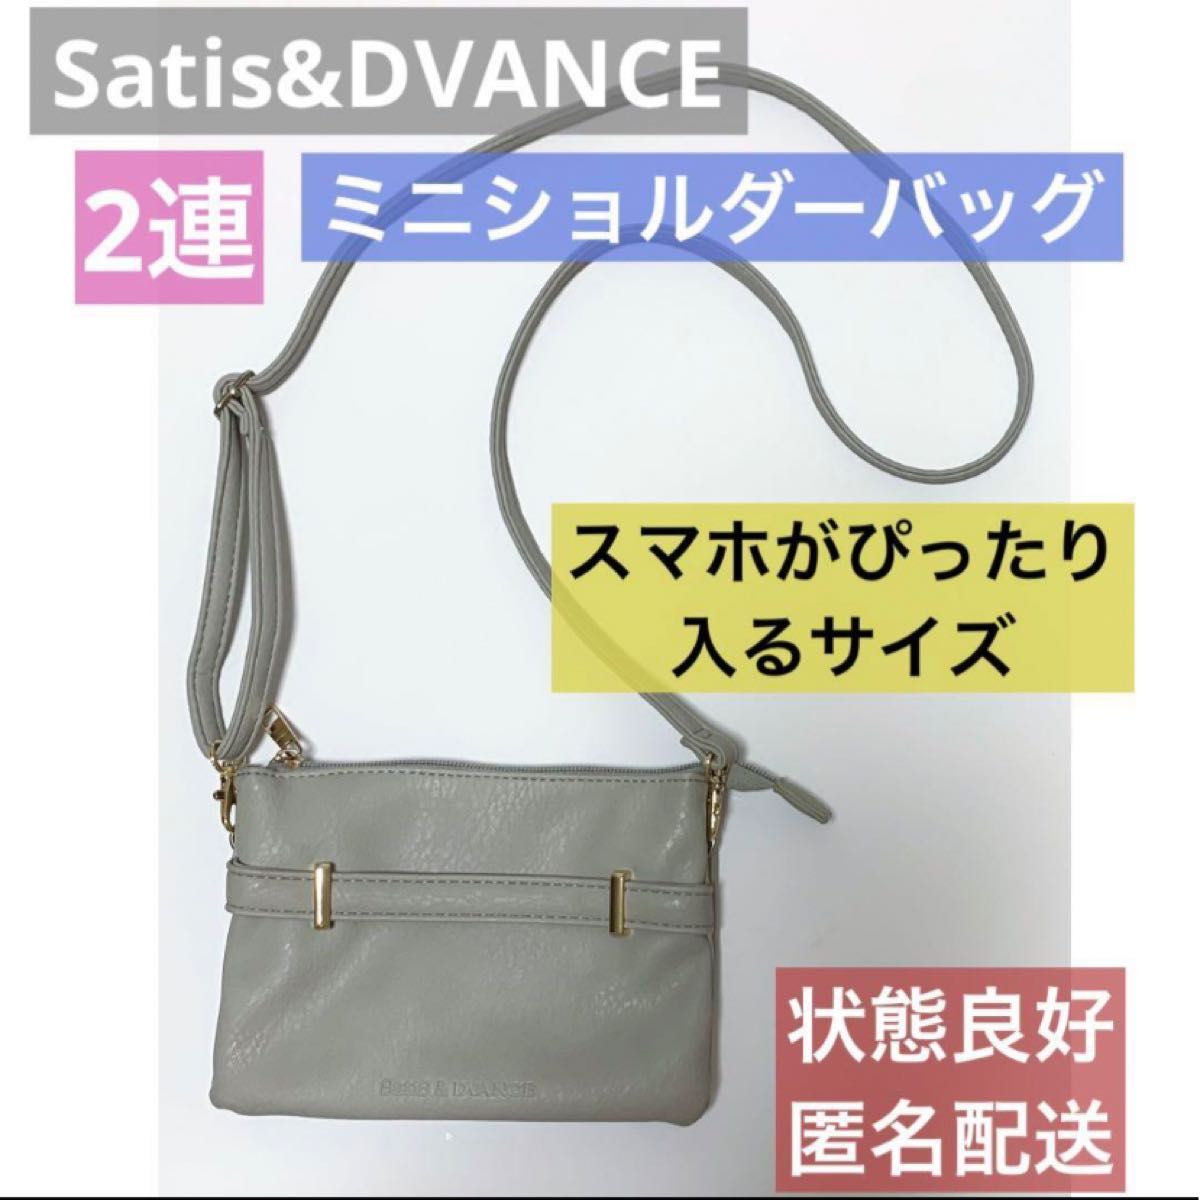 Satis&DVANCE ミニショルダーバッグ 2連 グレー フェイクレザー